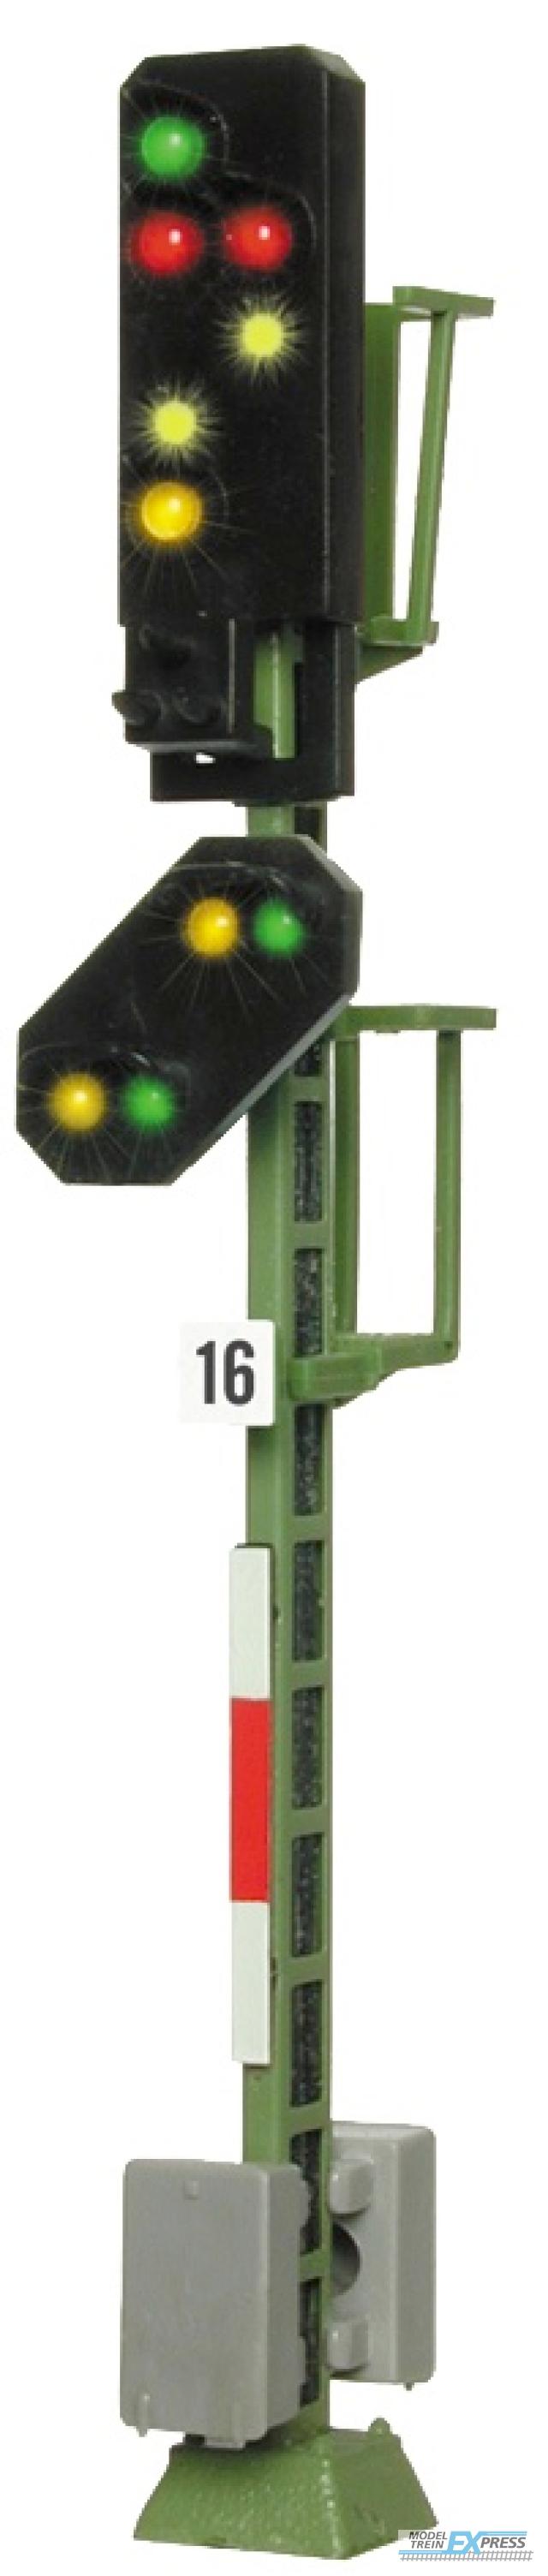 Viessmann 4016 H0 Licht-Ausfahrsignal mit Vorsignal